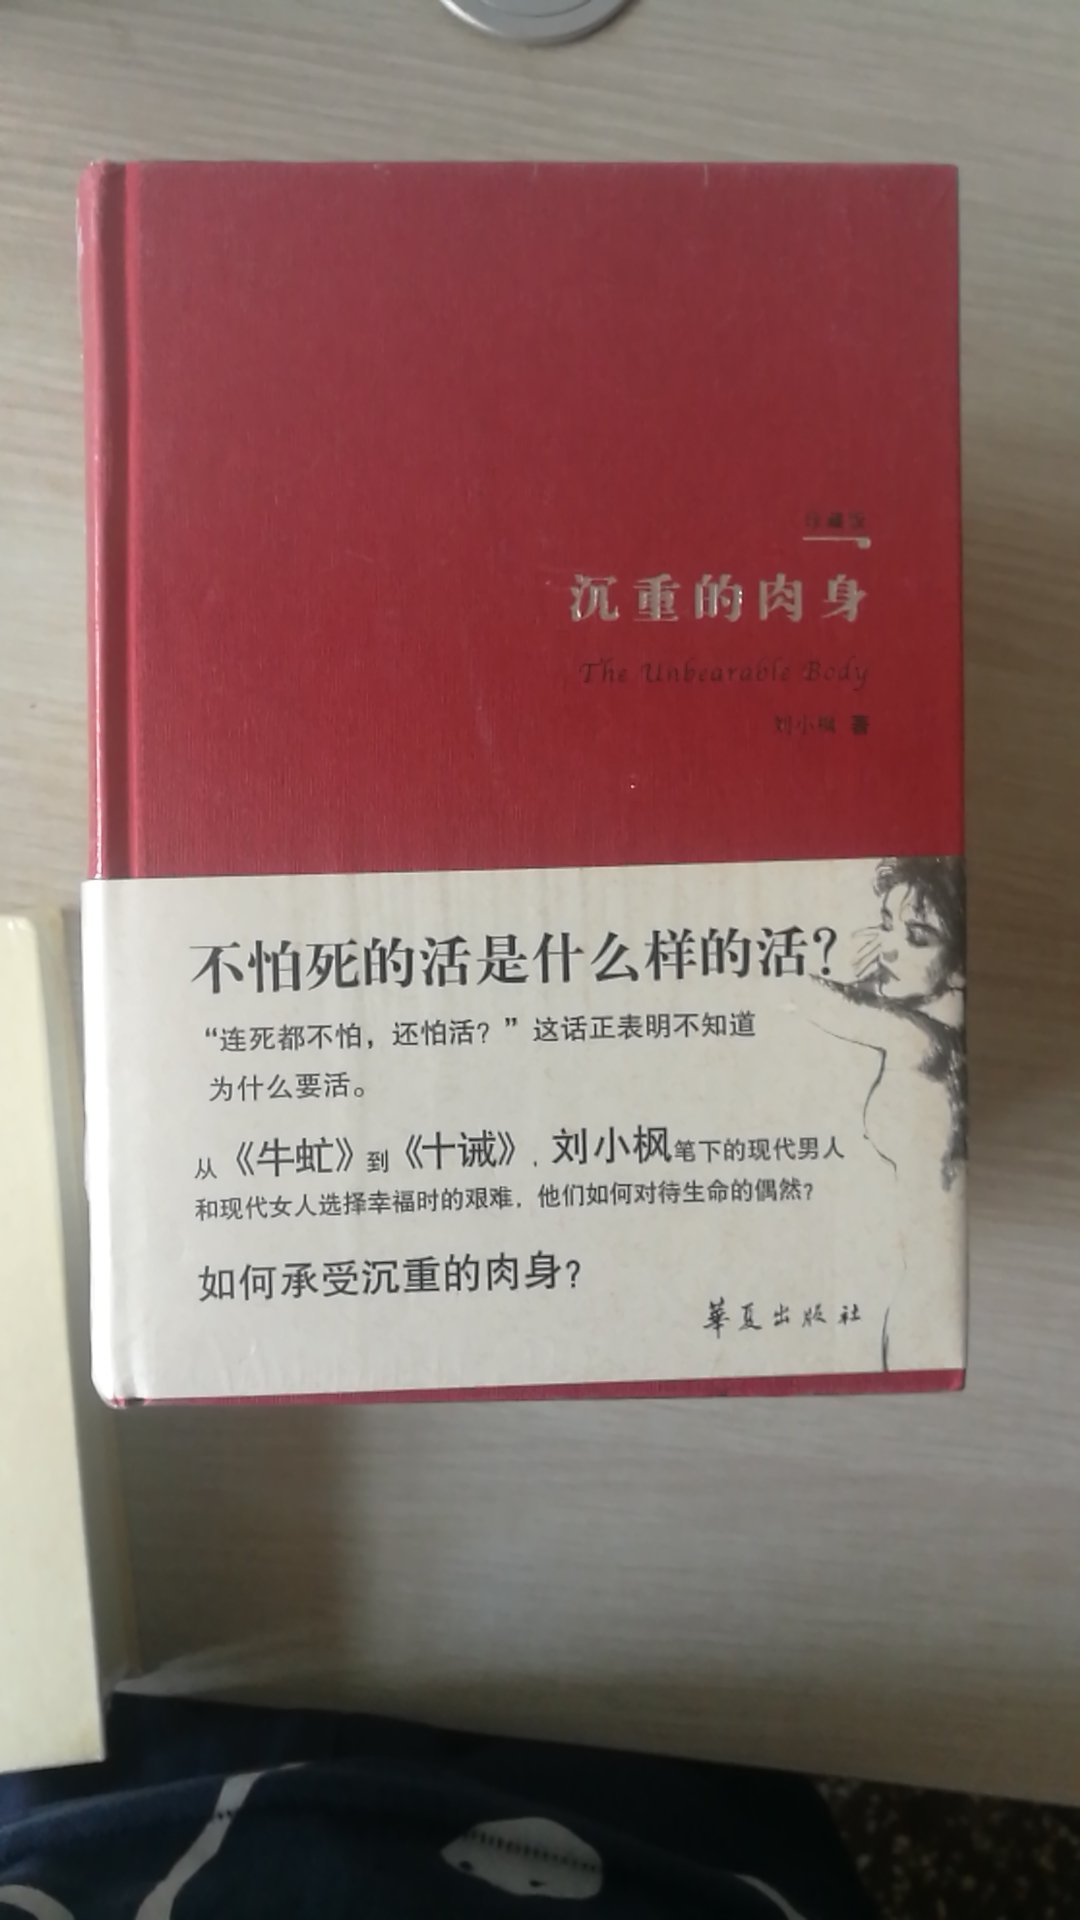 以前听听过这本书，也听说刘小枫。买来看看他的哲学著作到底有多么厉害？竟然史铁生的著作里也提到了他。